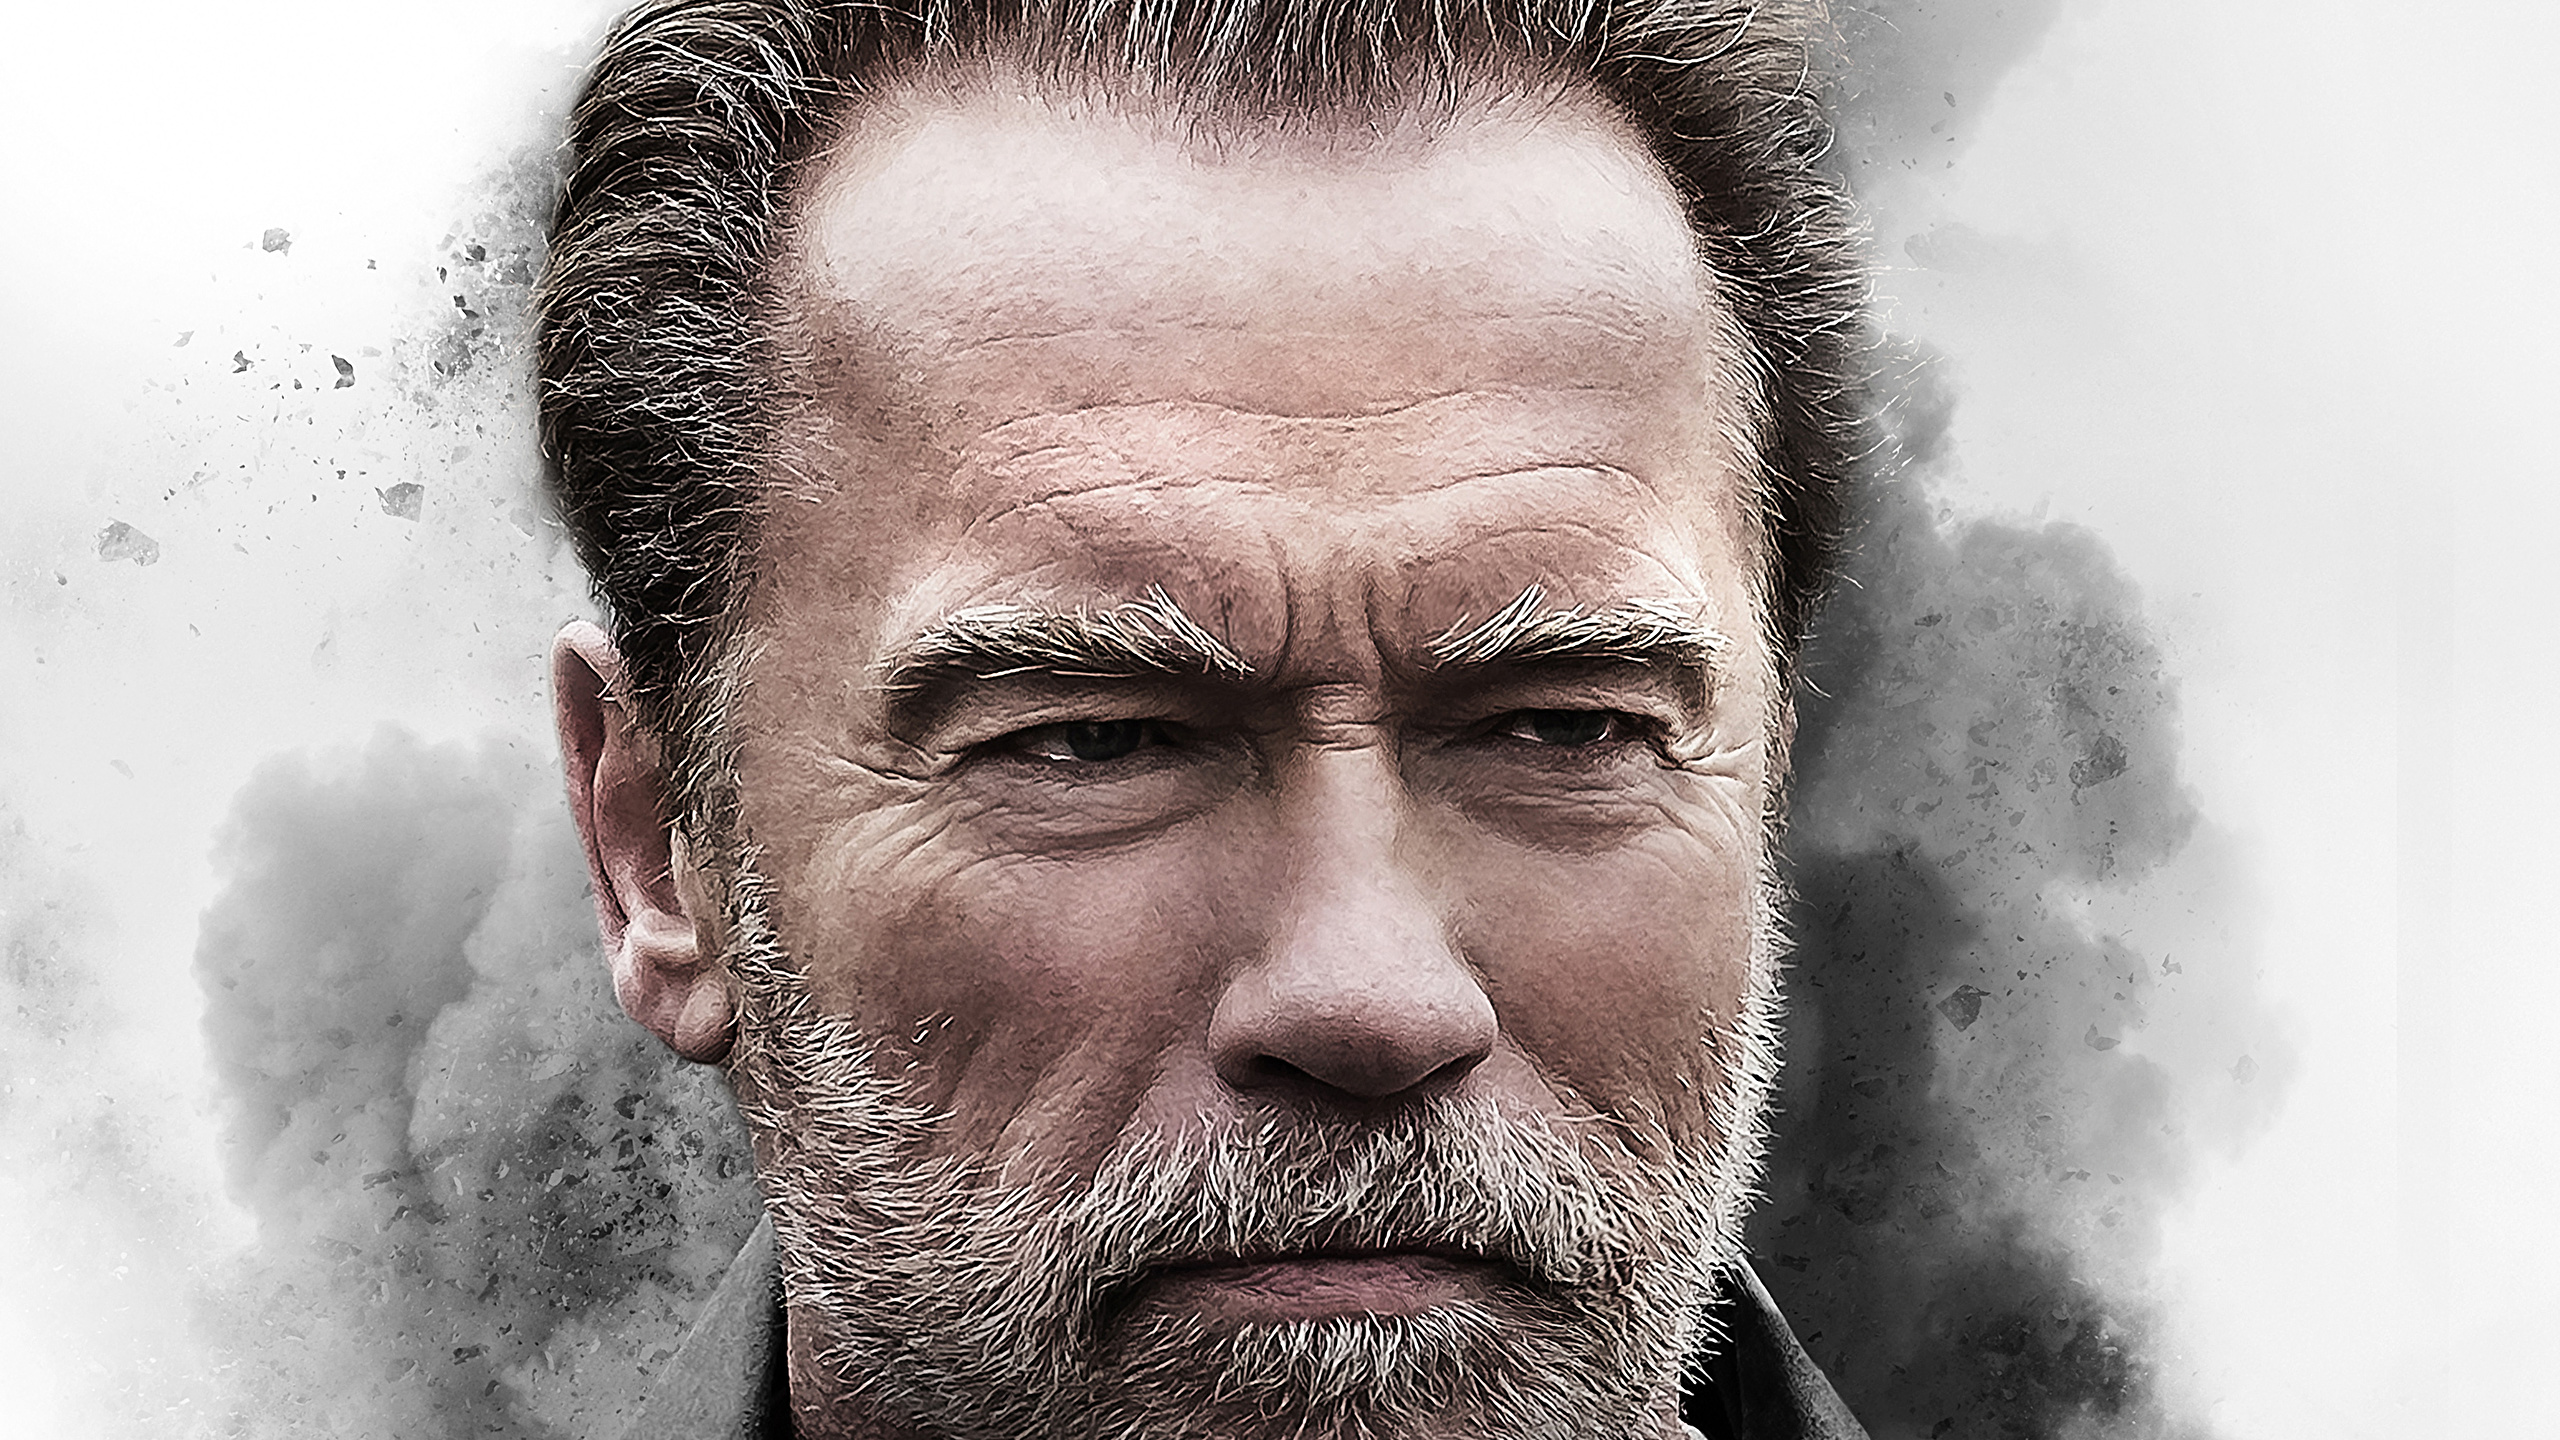 Arnold Schwarzenegger Image Hd - HD Wallpaper 